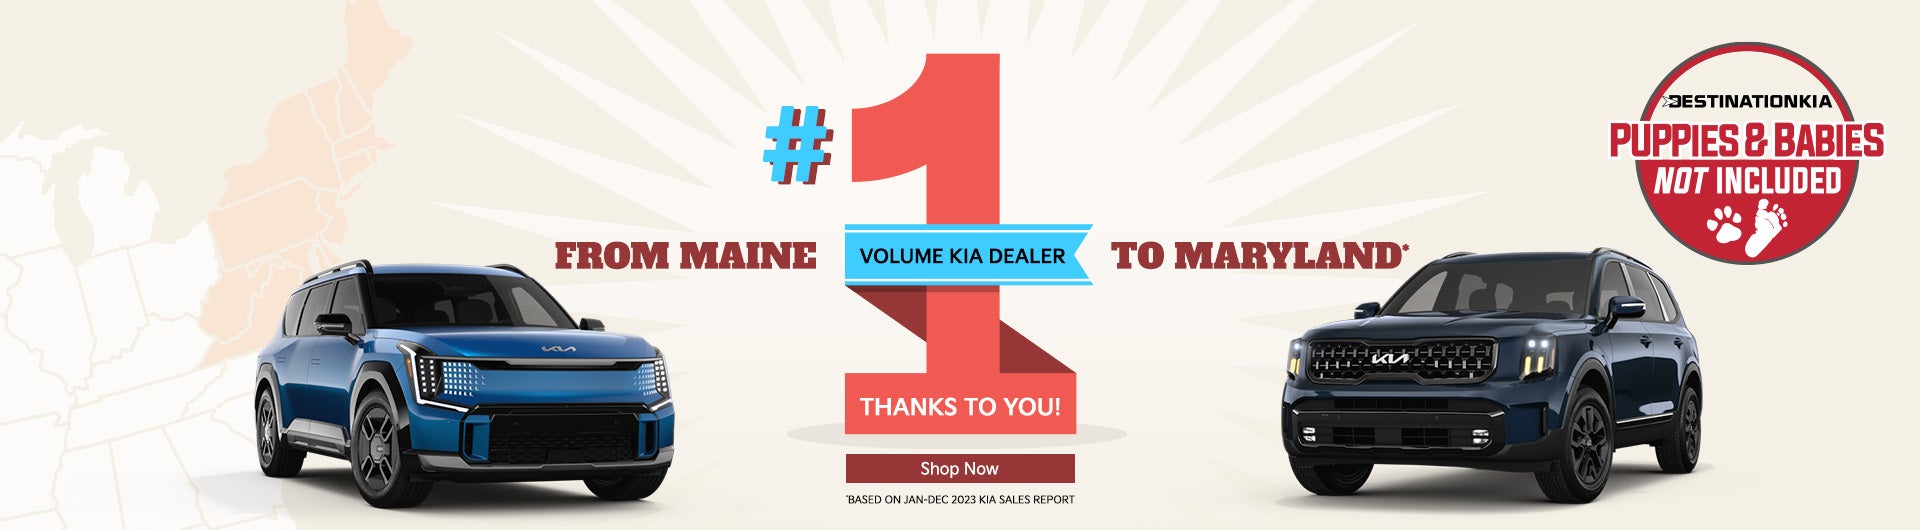 #1 volume kia dealer in region